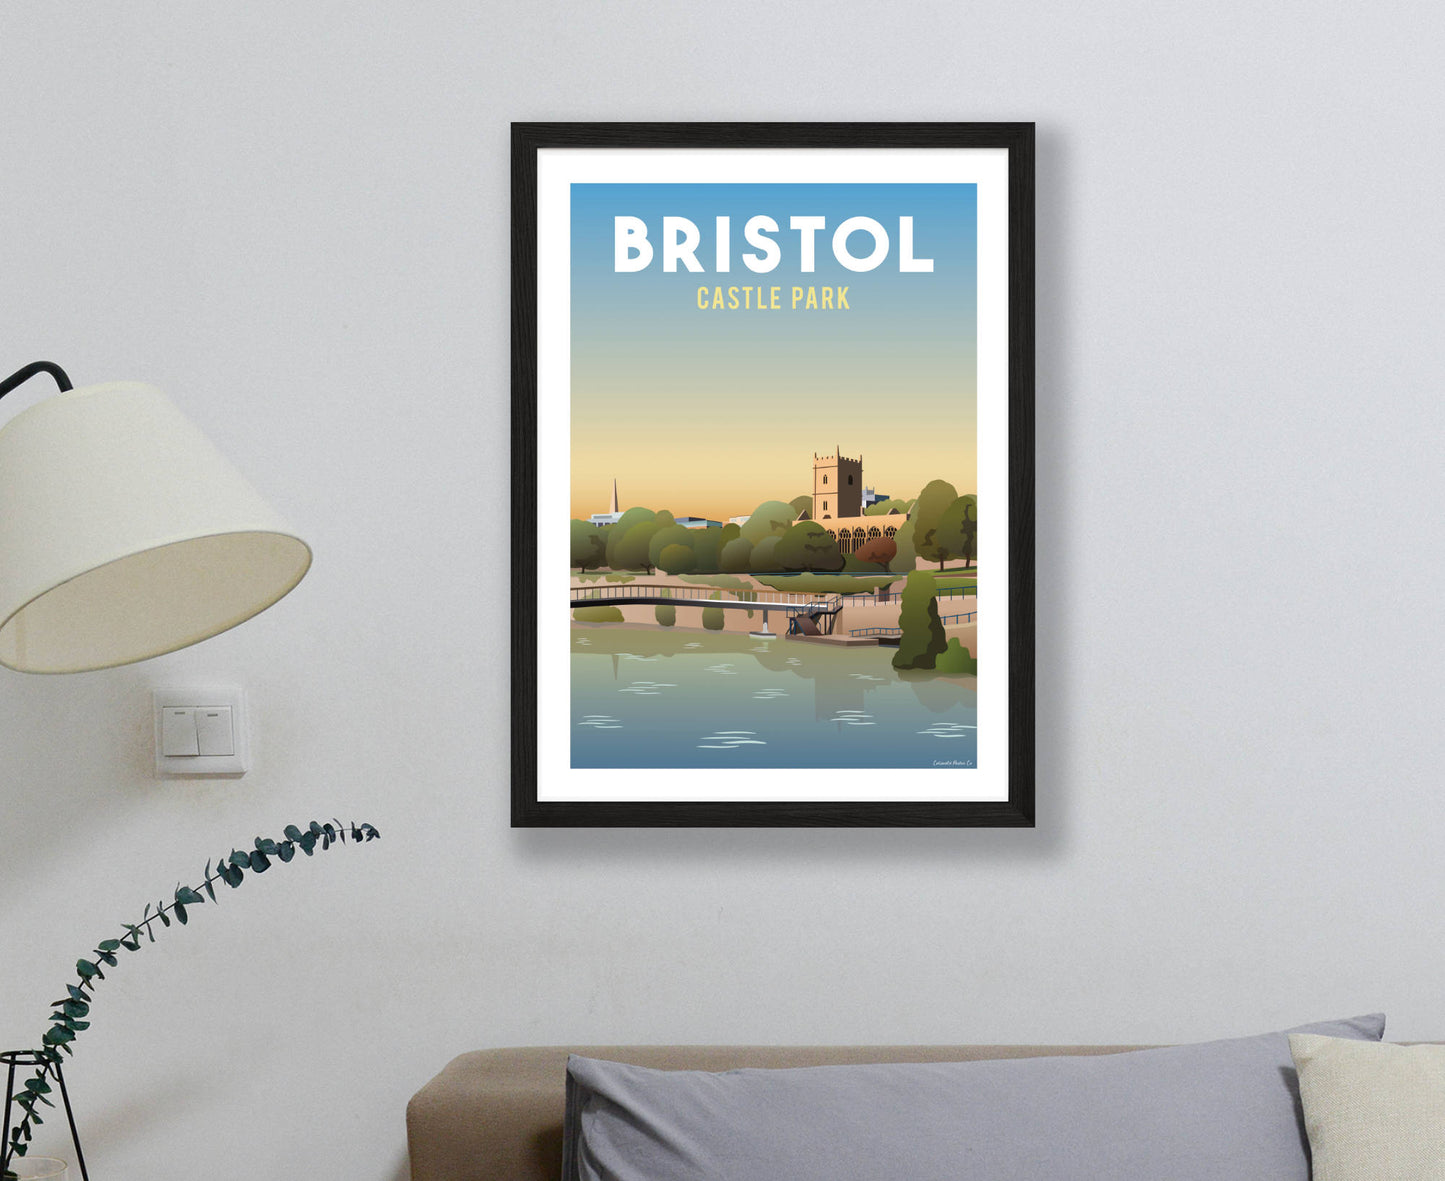 Bristol Castle Park Poster in black frame